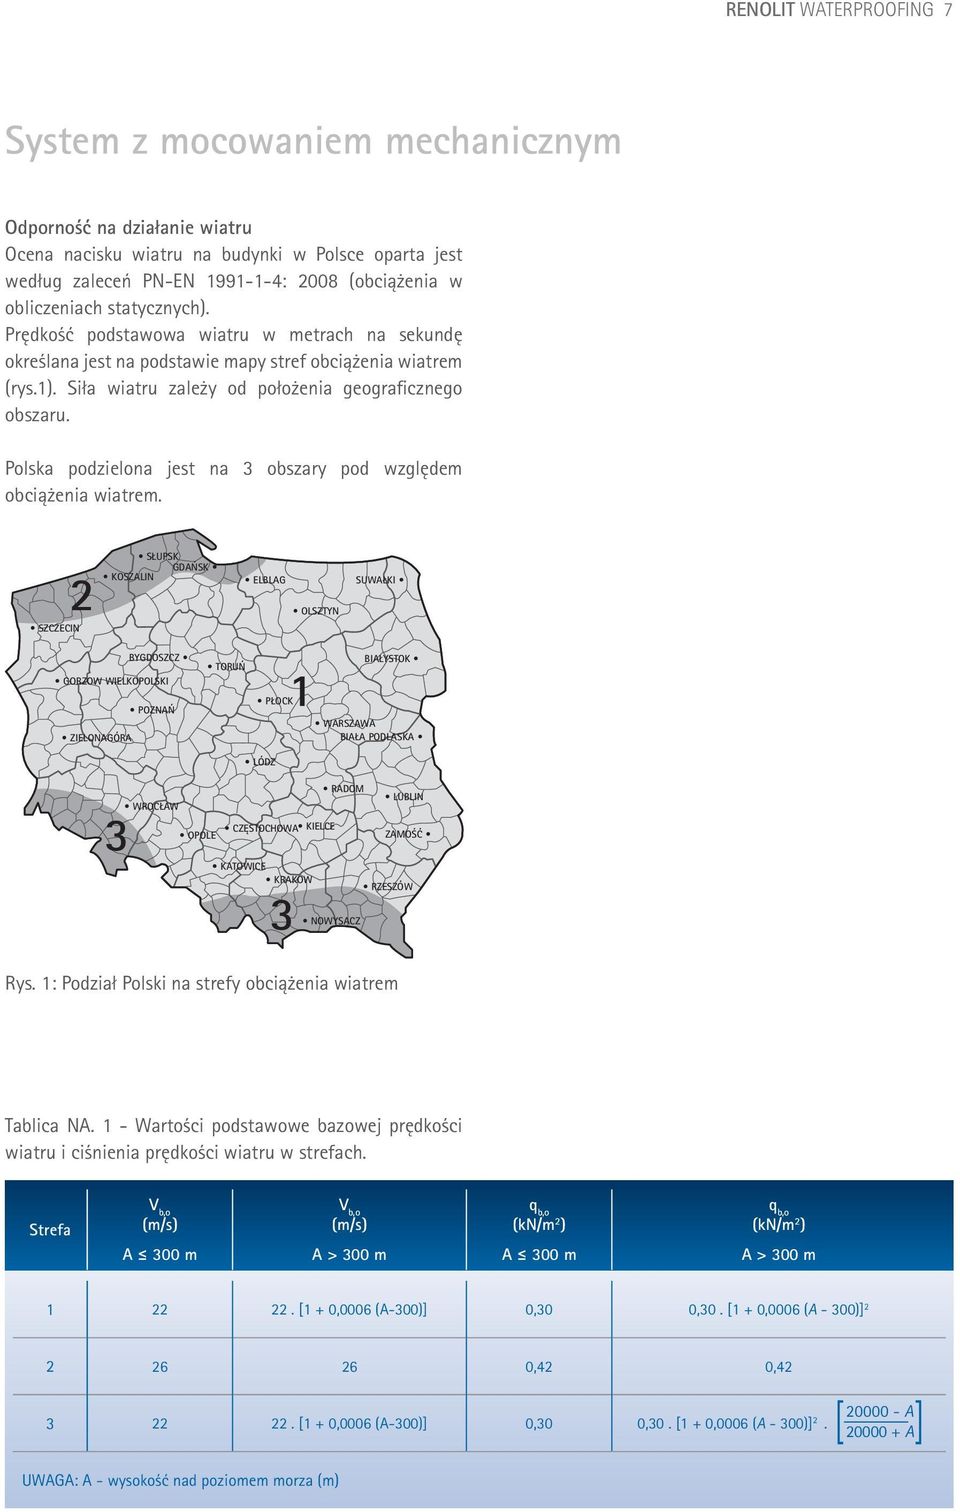 Polska podzielona jest na 3 obszary pod względem obciążenia wiatrem.